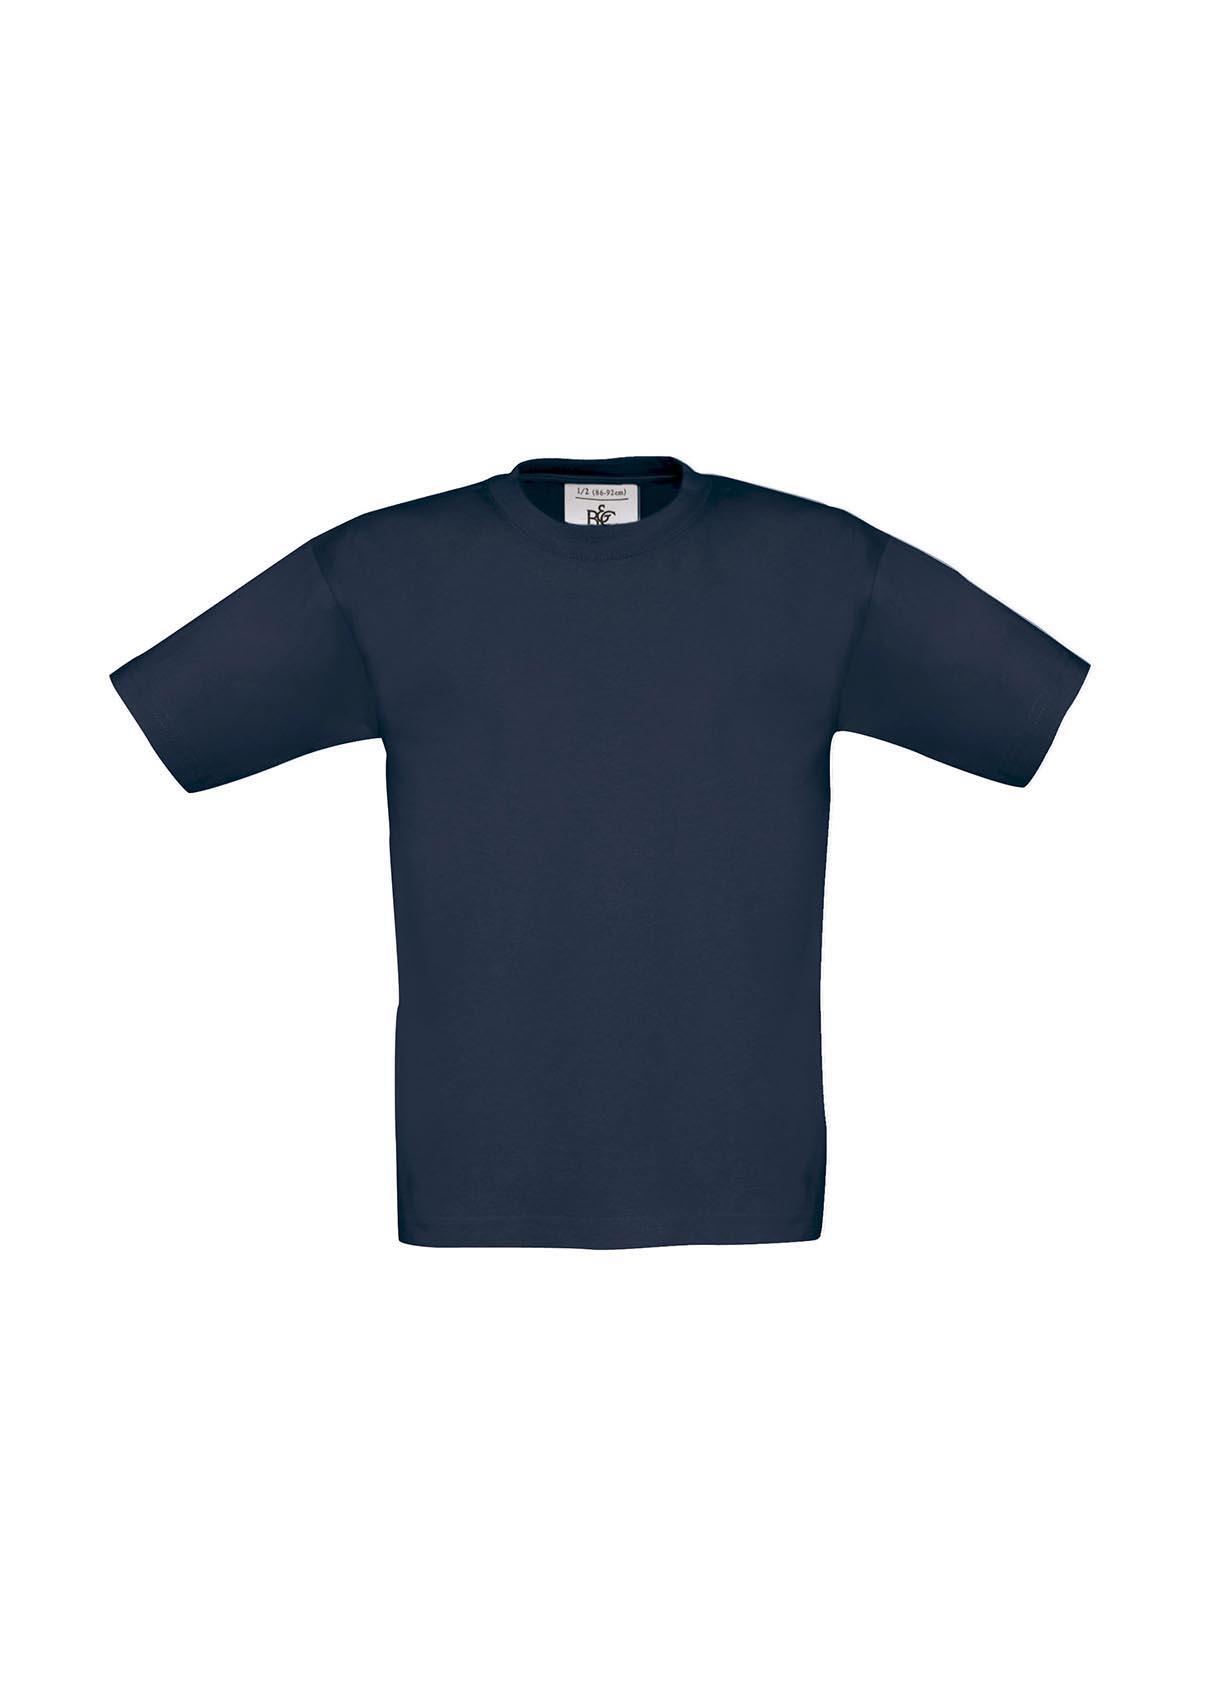 T-shirt voor kids light navy kinder shirt